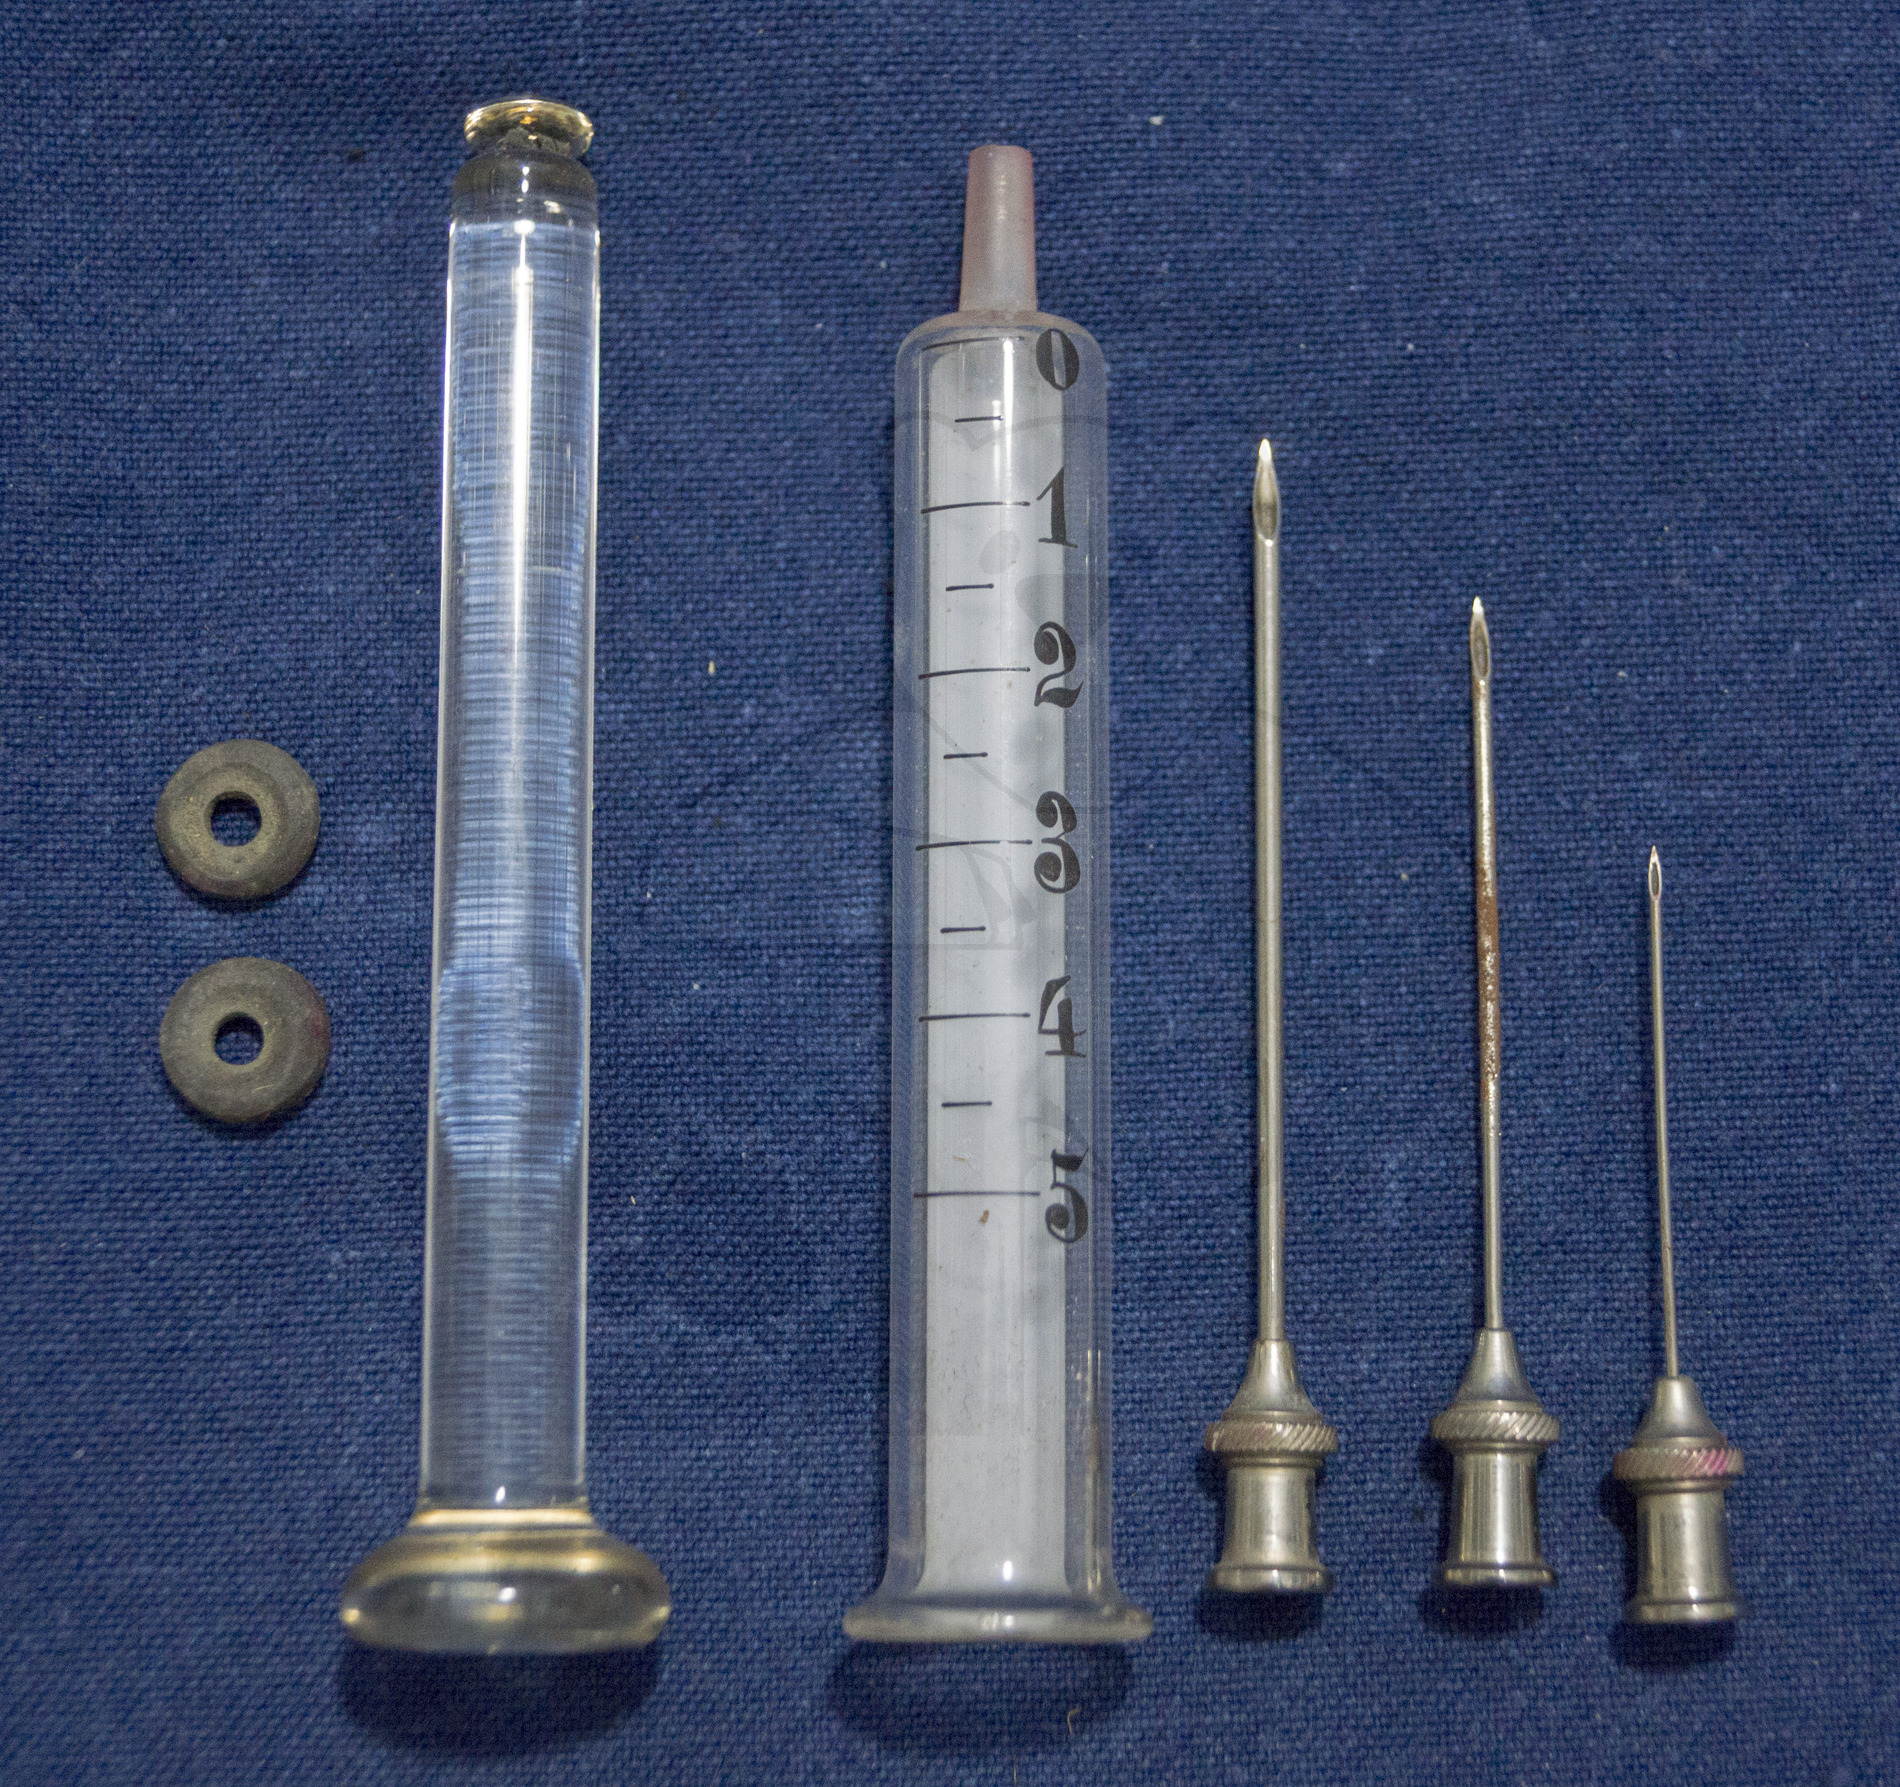 Handgemachte Glasspritze und Kanülen, um 1900, Spritze, Stempel, Kanülen, Dichtungen und Reinigungsdrähten